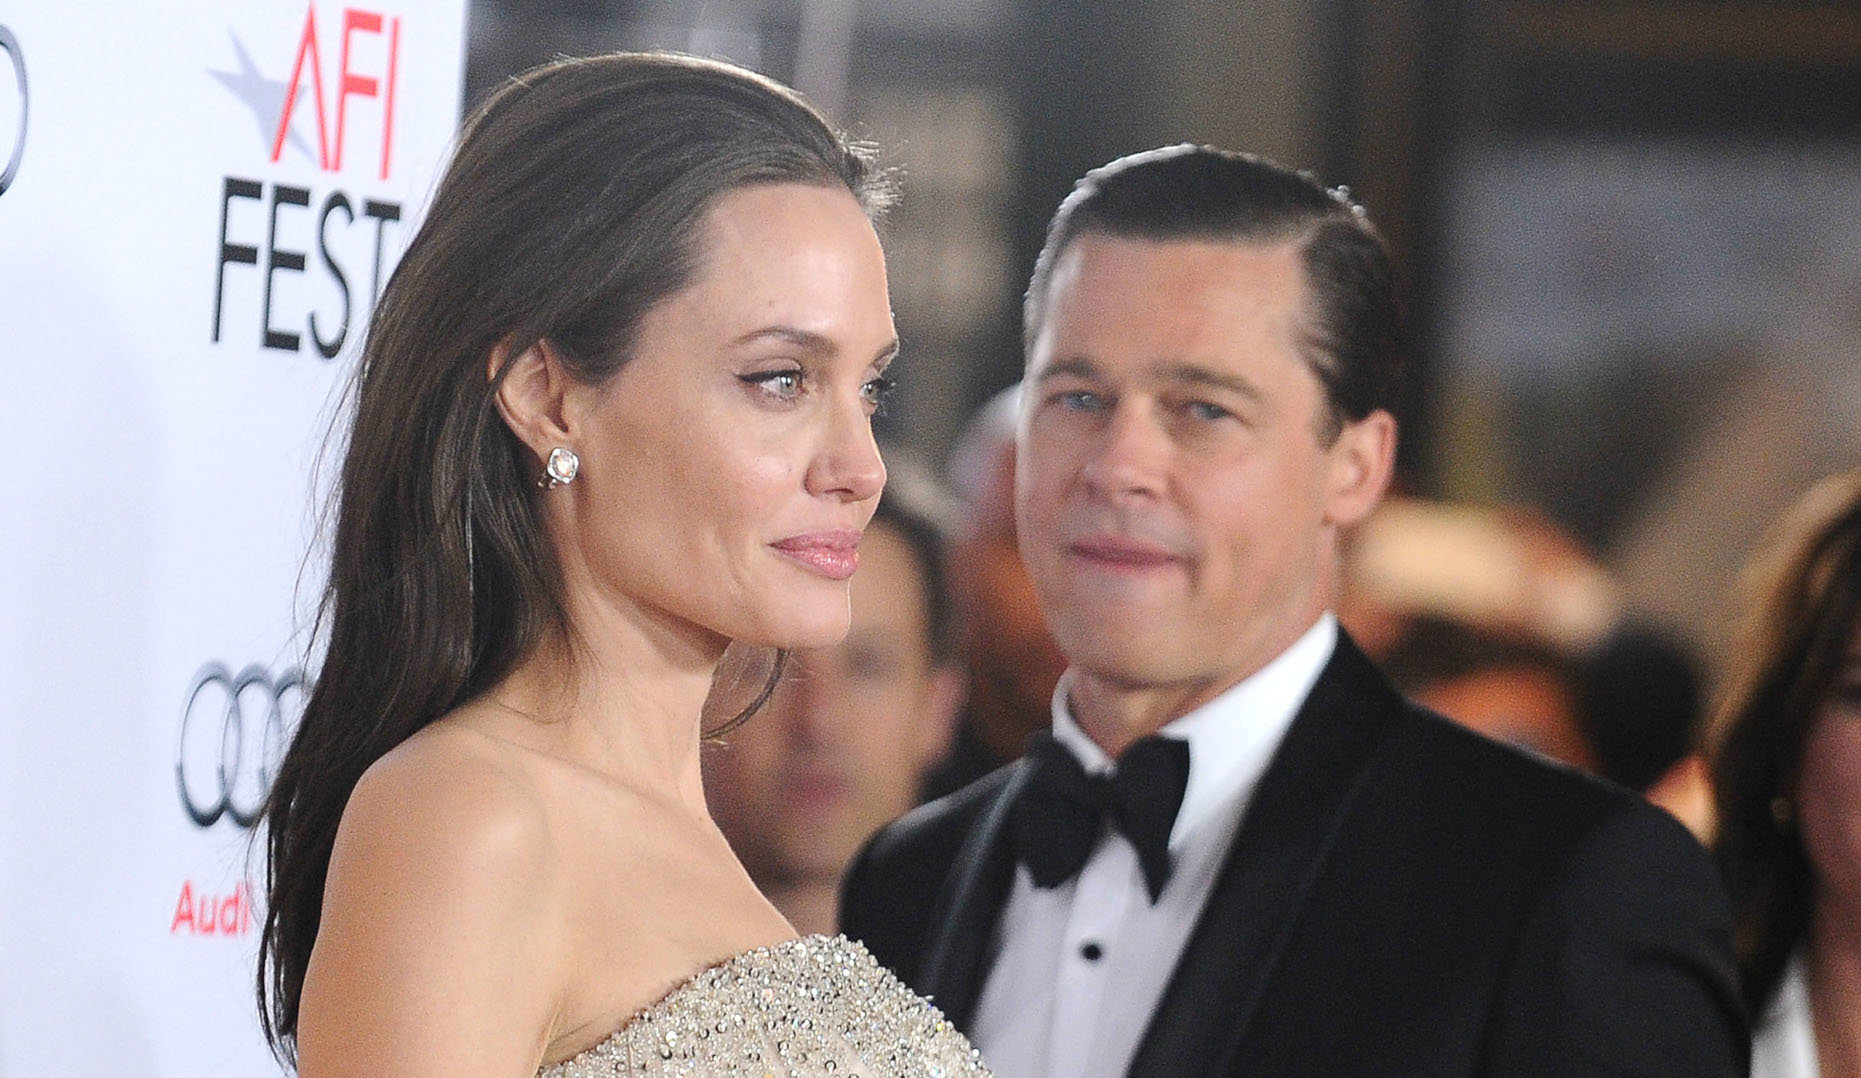 Αποκάλυψη για Angelina Jolie: Εκείνη διέρρευσε τις φωτογραφίες με τον Pitt όσο ήταν παντρεμένος με την Aniston